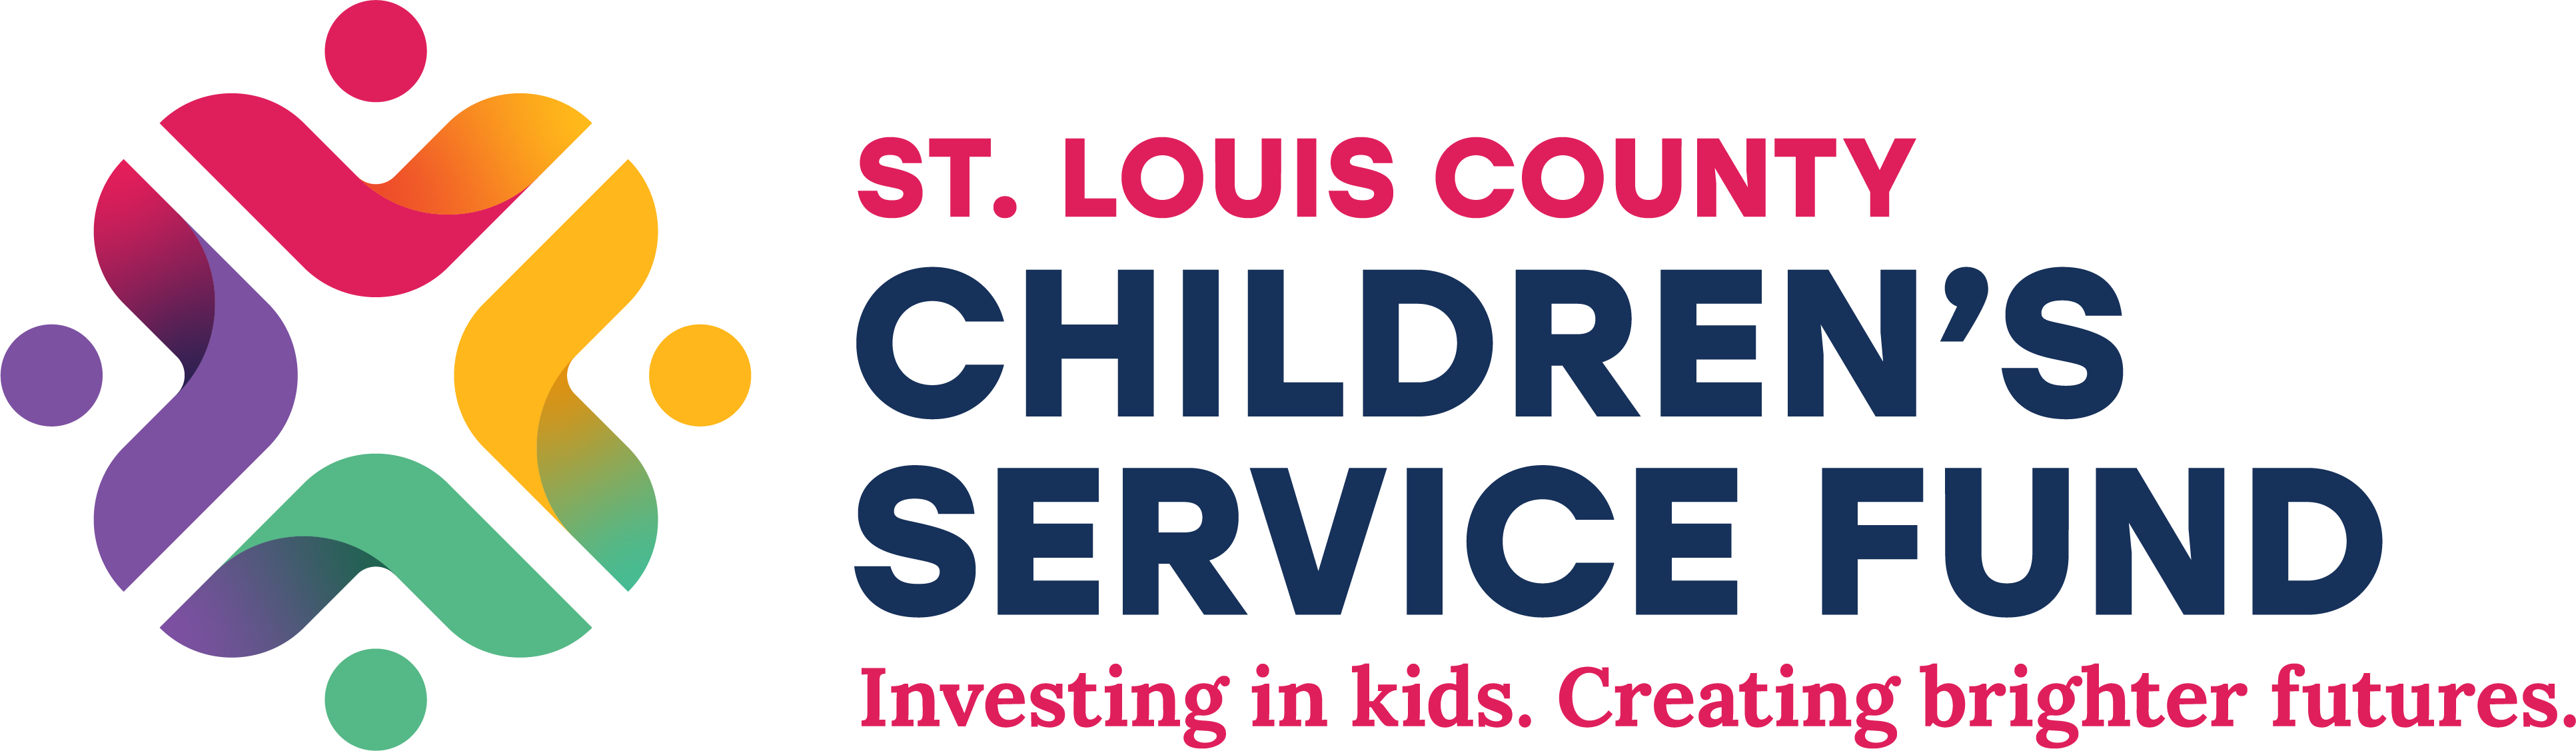 St. Louis County Children’s Service Fund